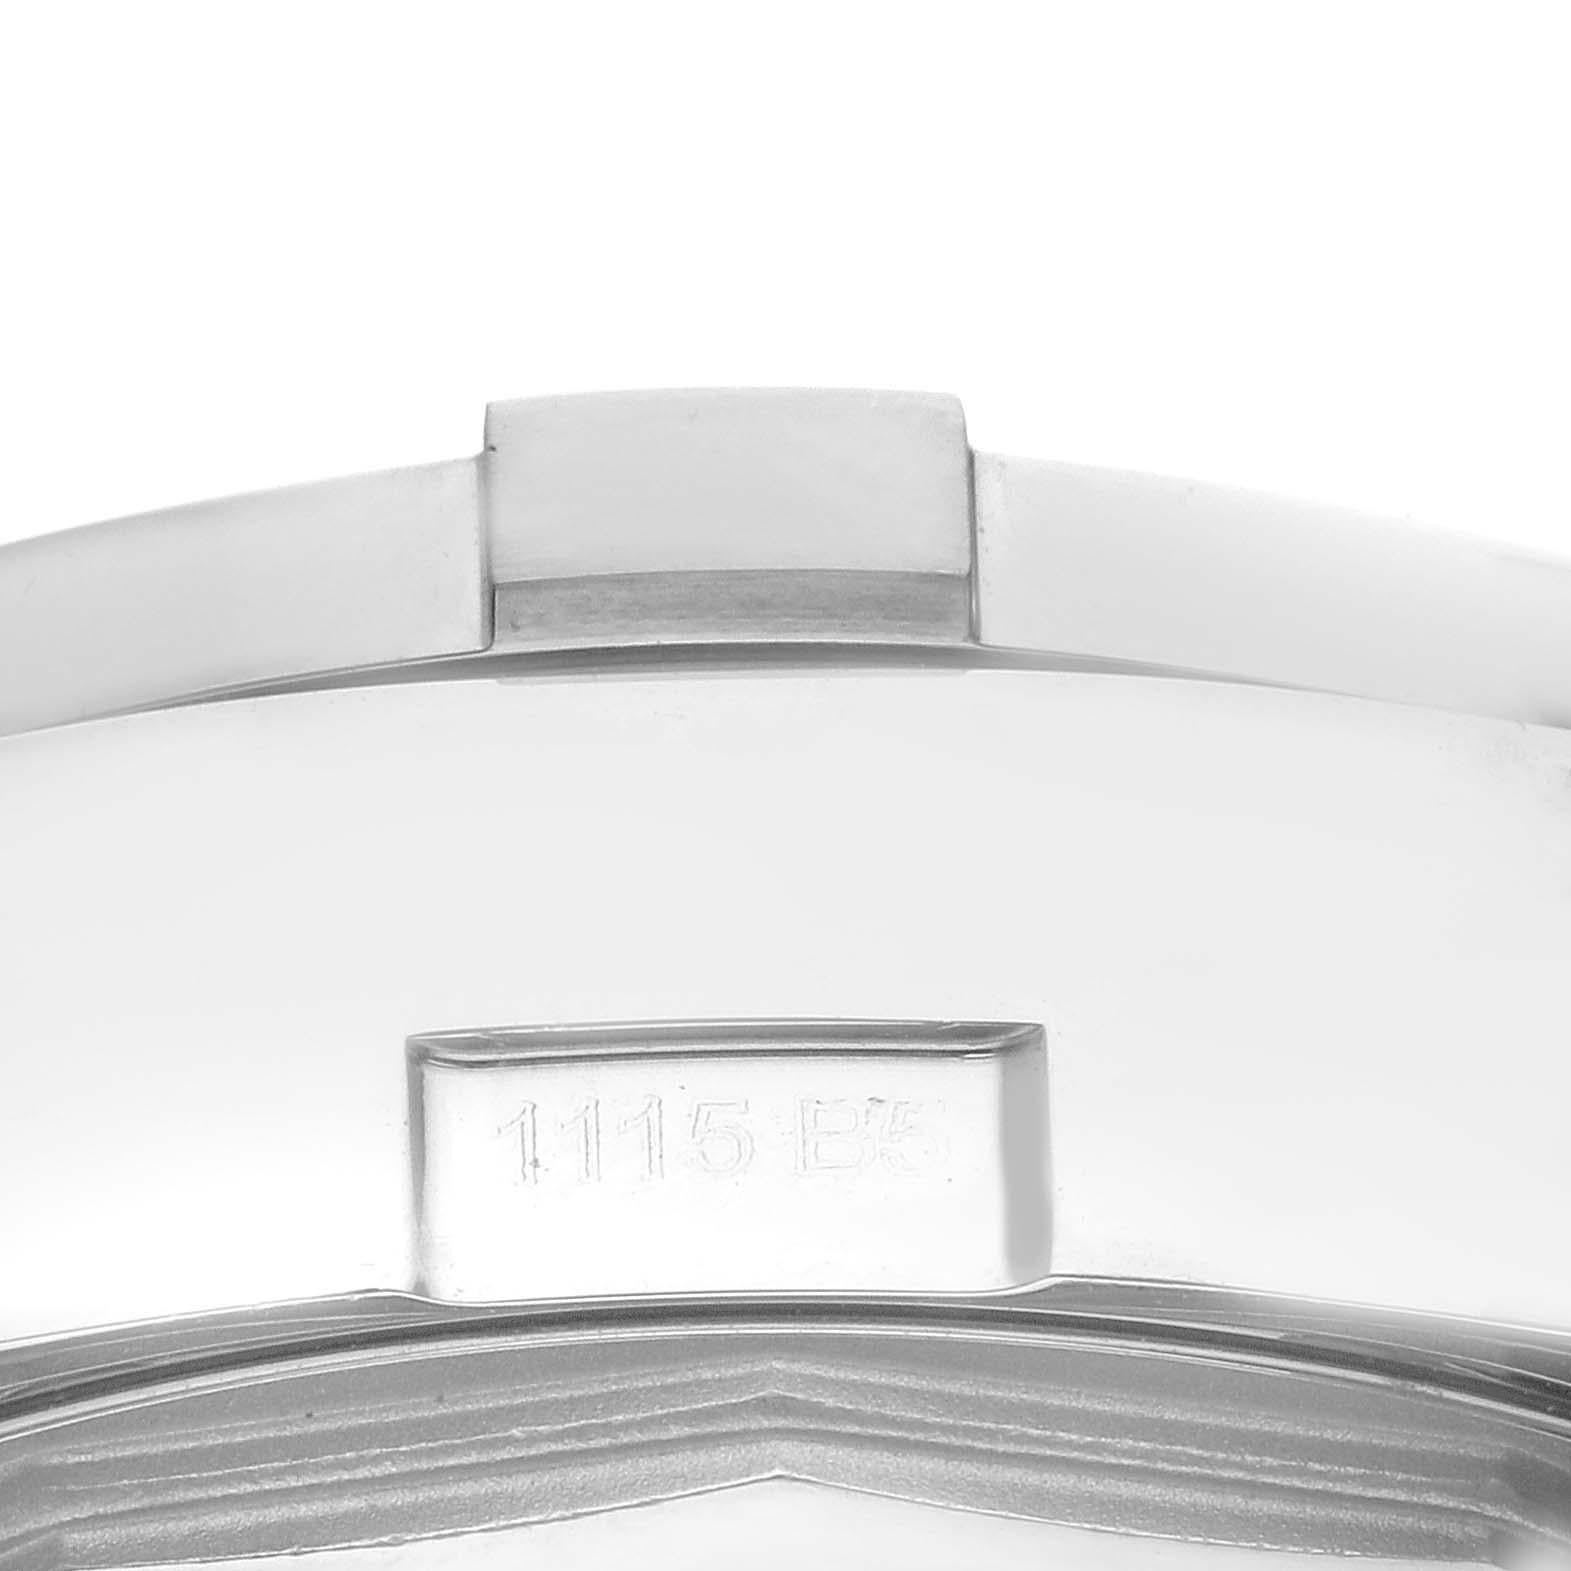 Breitling Avenger II Weißes Zifferblatt Stahl Herrenuhr A13381 Box Card. Automatisches Uhrwerk mit Selbstaufzug. Chronographen-Funktion. Edelstahlgehäuse mit 43 mm Durchmesser, verschraubter Krone und Drückern. Einseitig drehbare Lünette aus